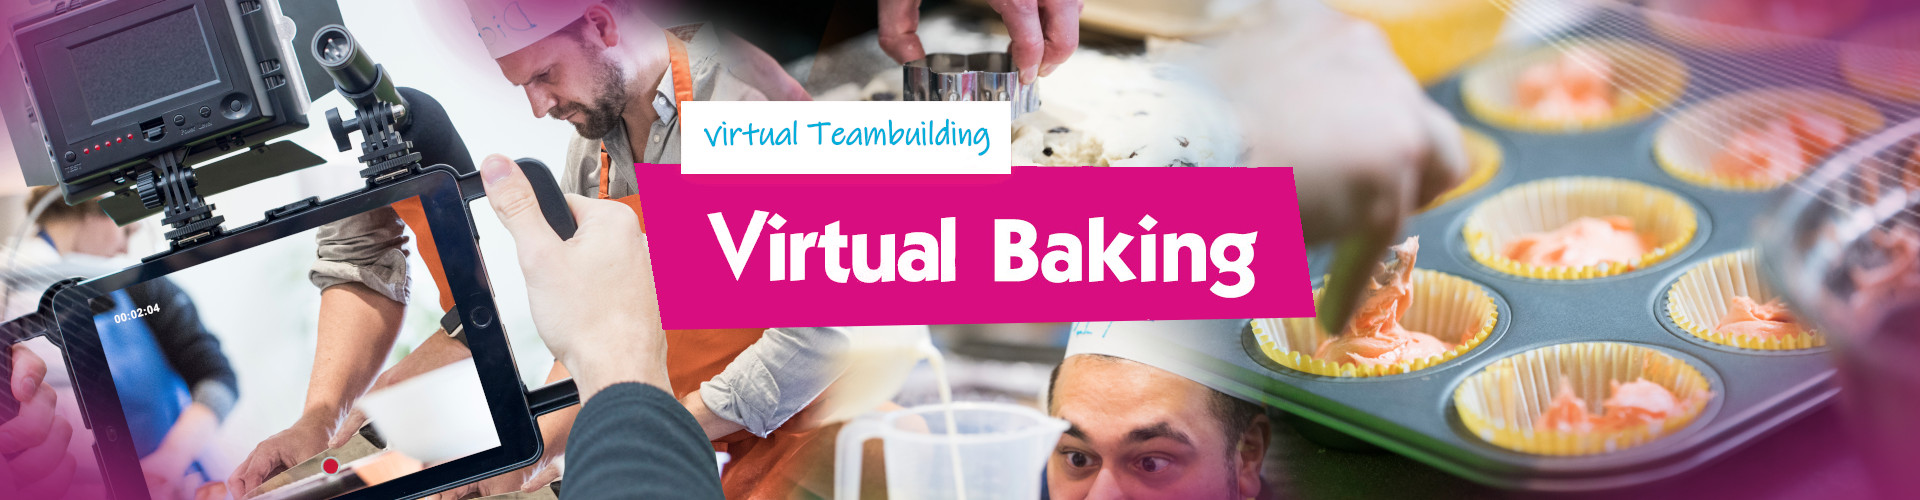 Virtual Baking - Banner